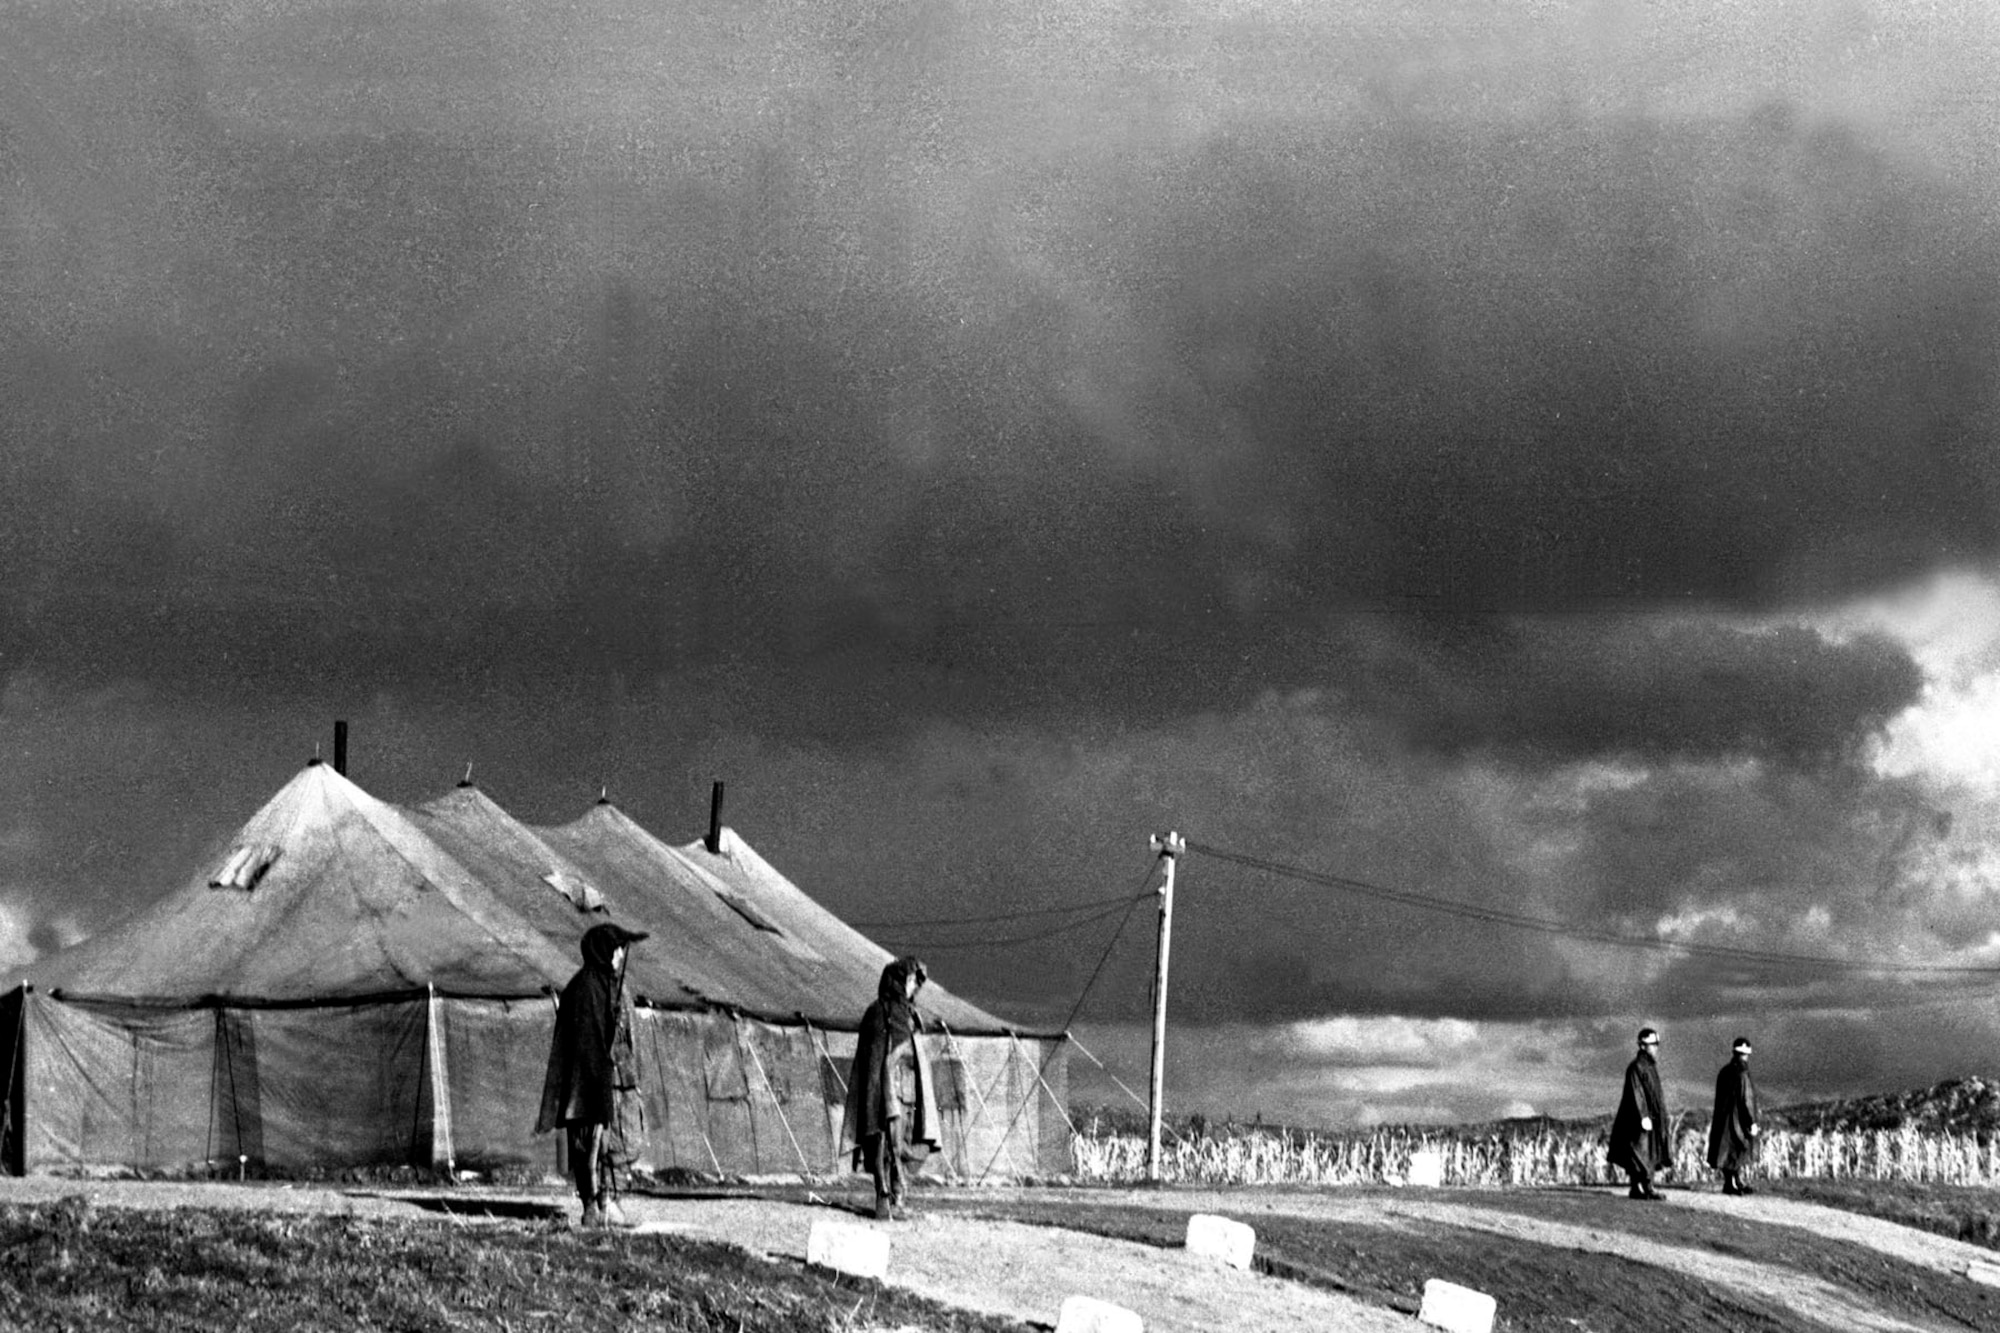 Panmunjom, Korea, November 1951, the site of armistice negotiations. (U.S. Air Force photo)